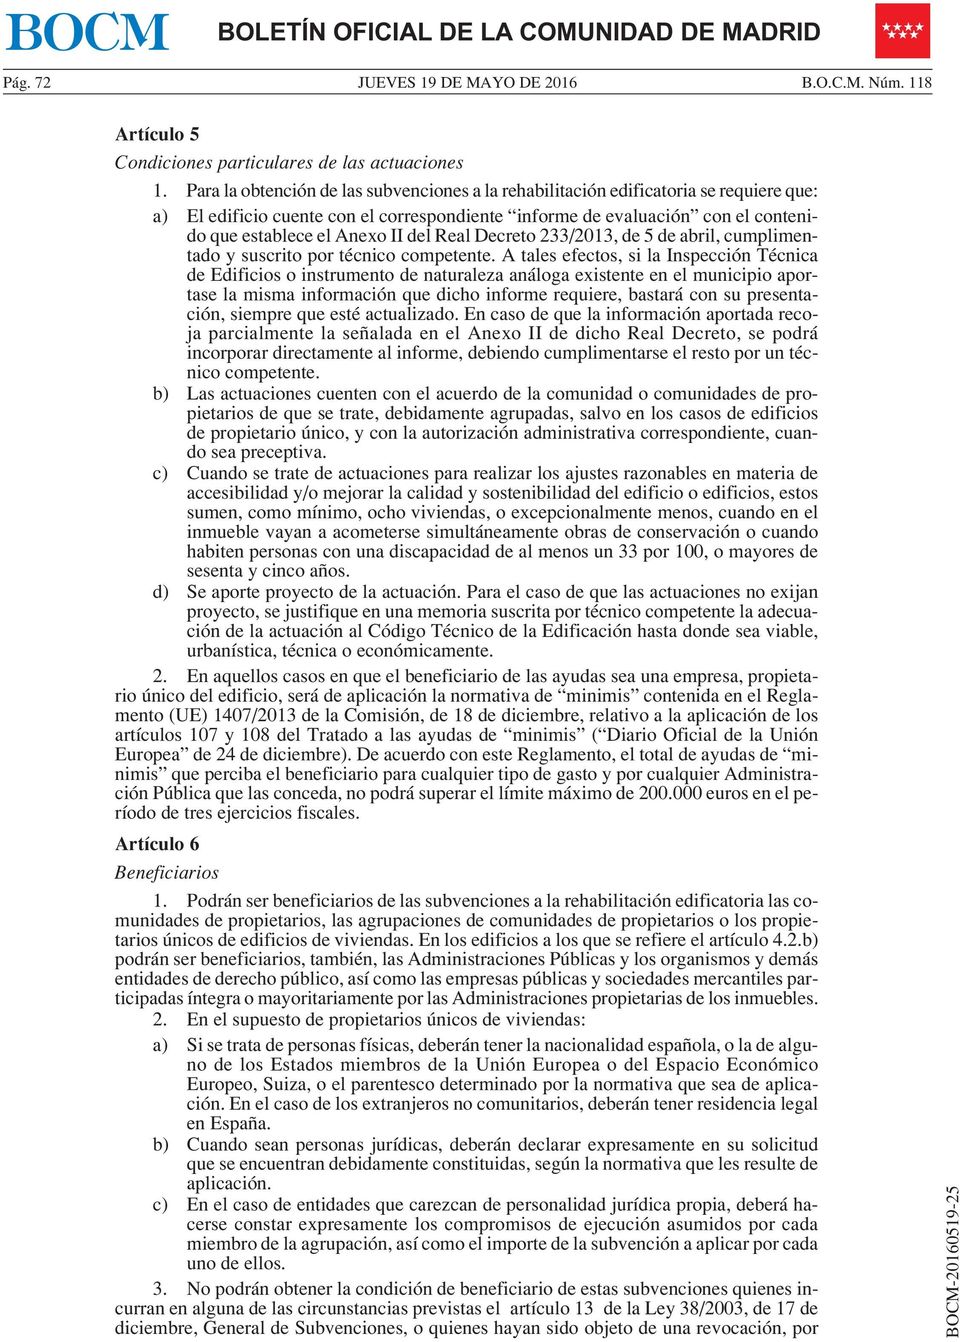 del Real Decreto 233/2013, de 5 de abril, cumplimentado y suscrito por técnico competente.